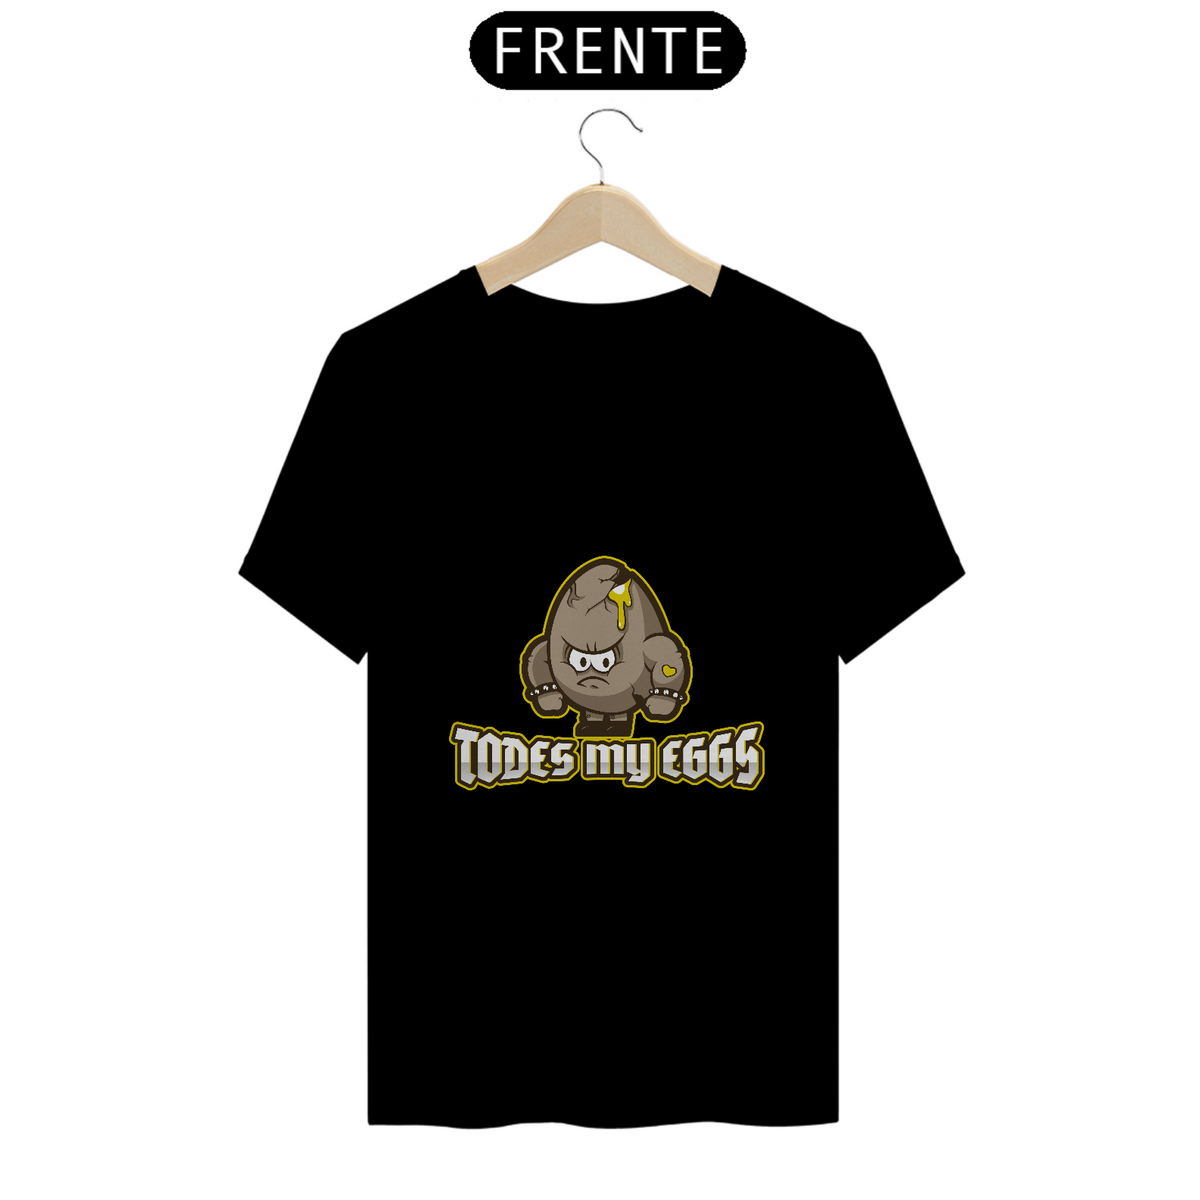 Nome do produto: Camiseta Prime Todes my eggs